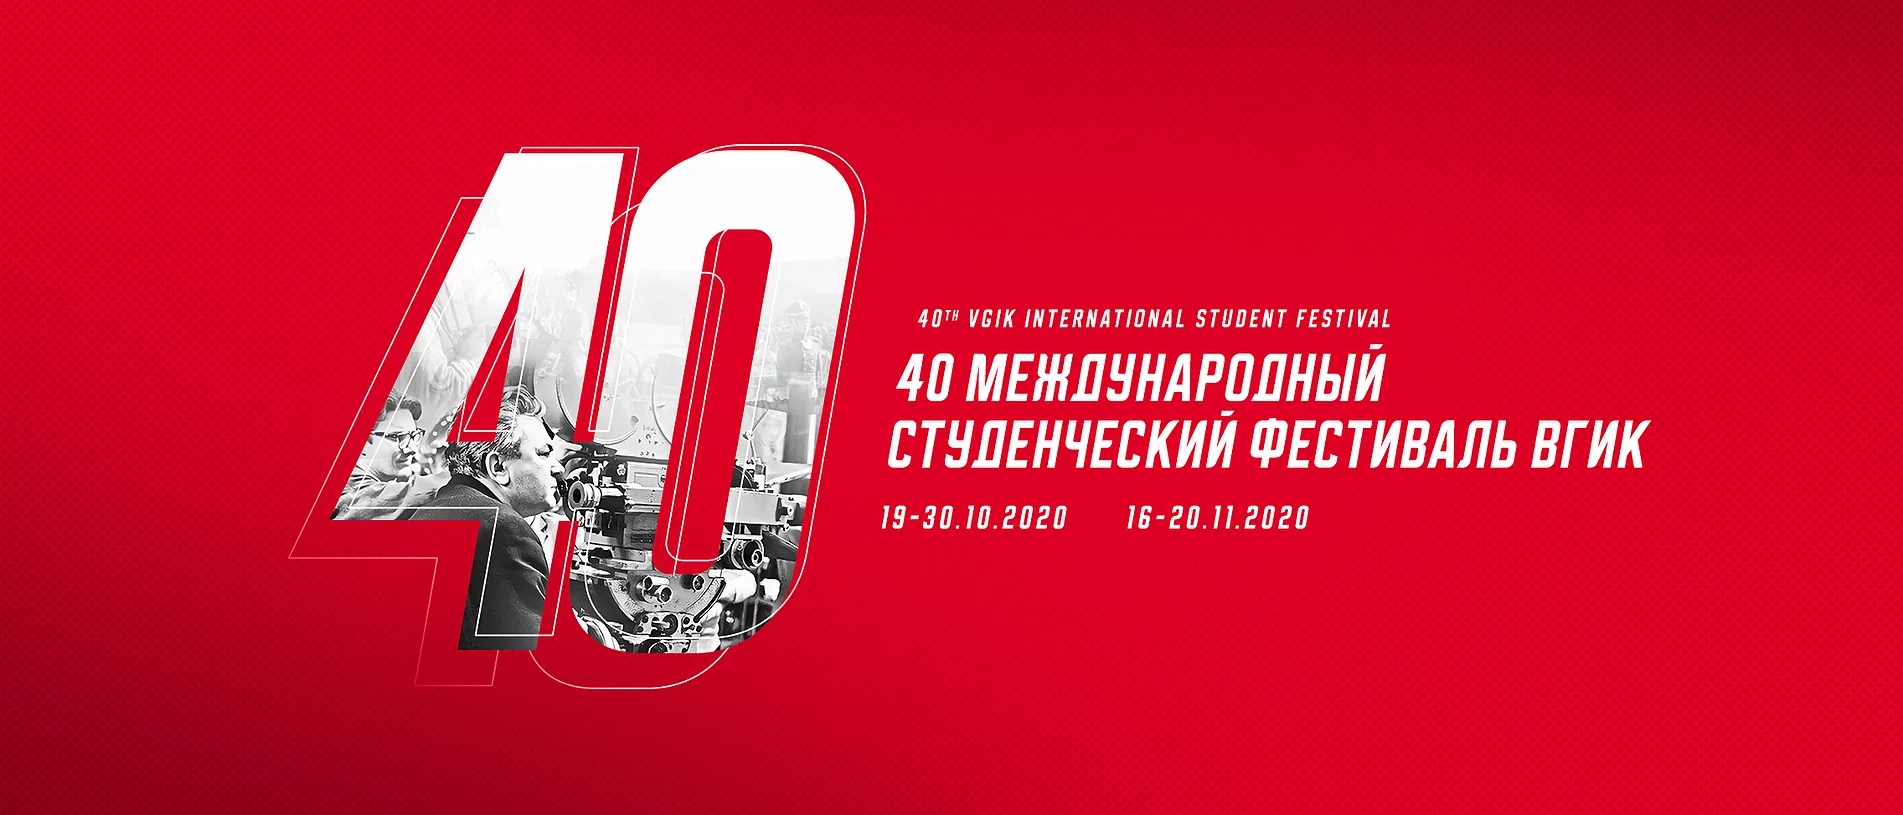 В Красноярском крае пройдет кинопоказ в рамках 40-го Международного студенческого фестиваля ВГИК